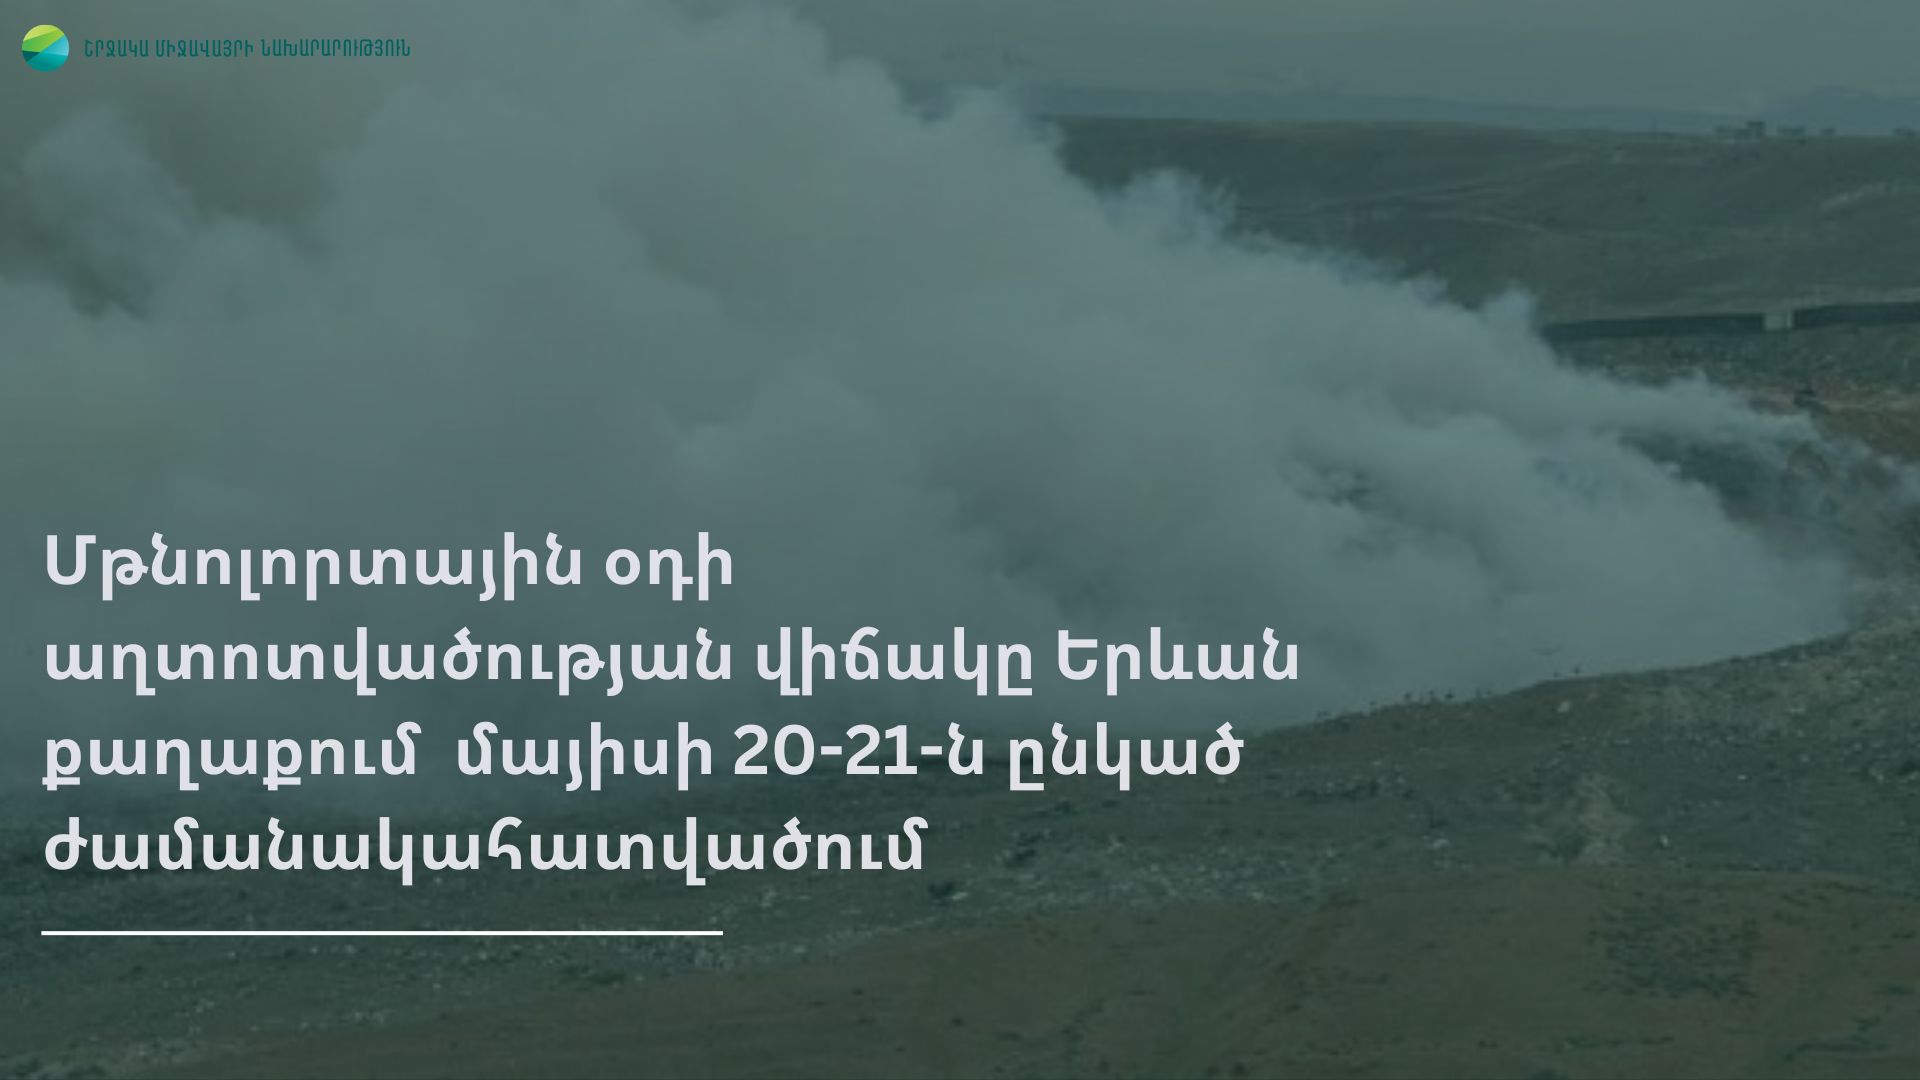 Մթնոլորտային օդի աղտոտվածության վիճակը Երևան քաղաքում մայիսի 20-ից 21-ն ընկած ժամանակահատվածում